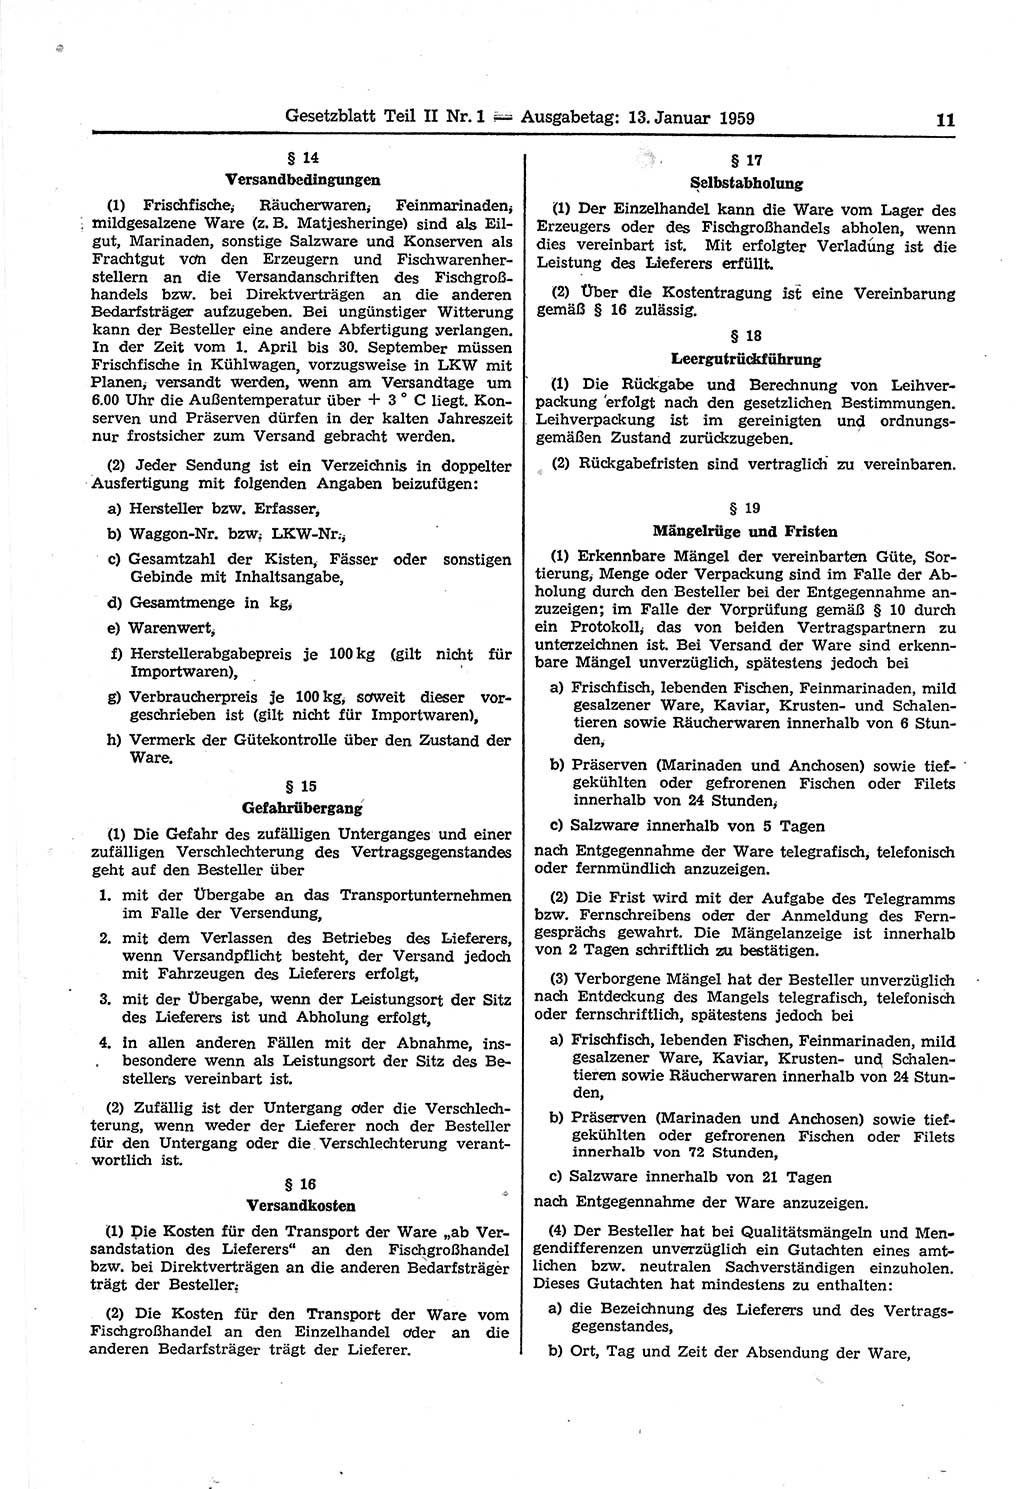 Gesetzblatt (GBl.) der Deutschen Demokratischen Republik (DDR) Teil â… â… 1959, Seite 11 (GBl. DDR â… â… 1959, S. 11)